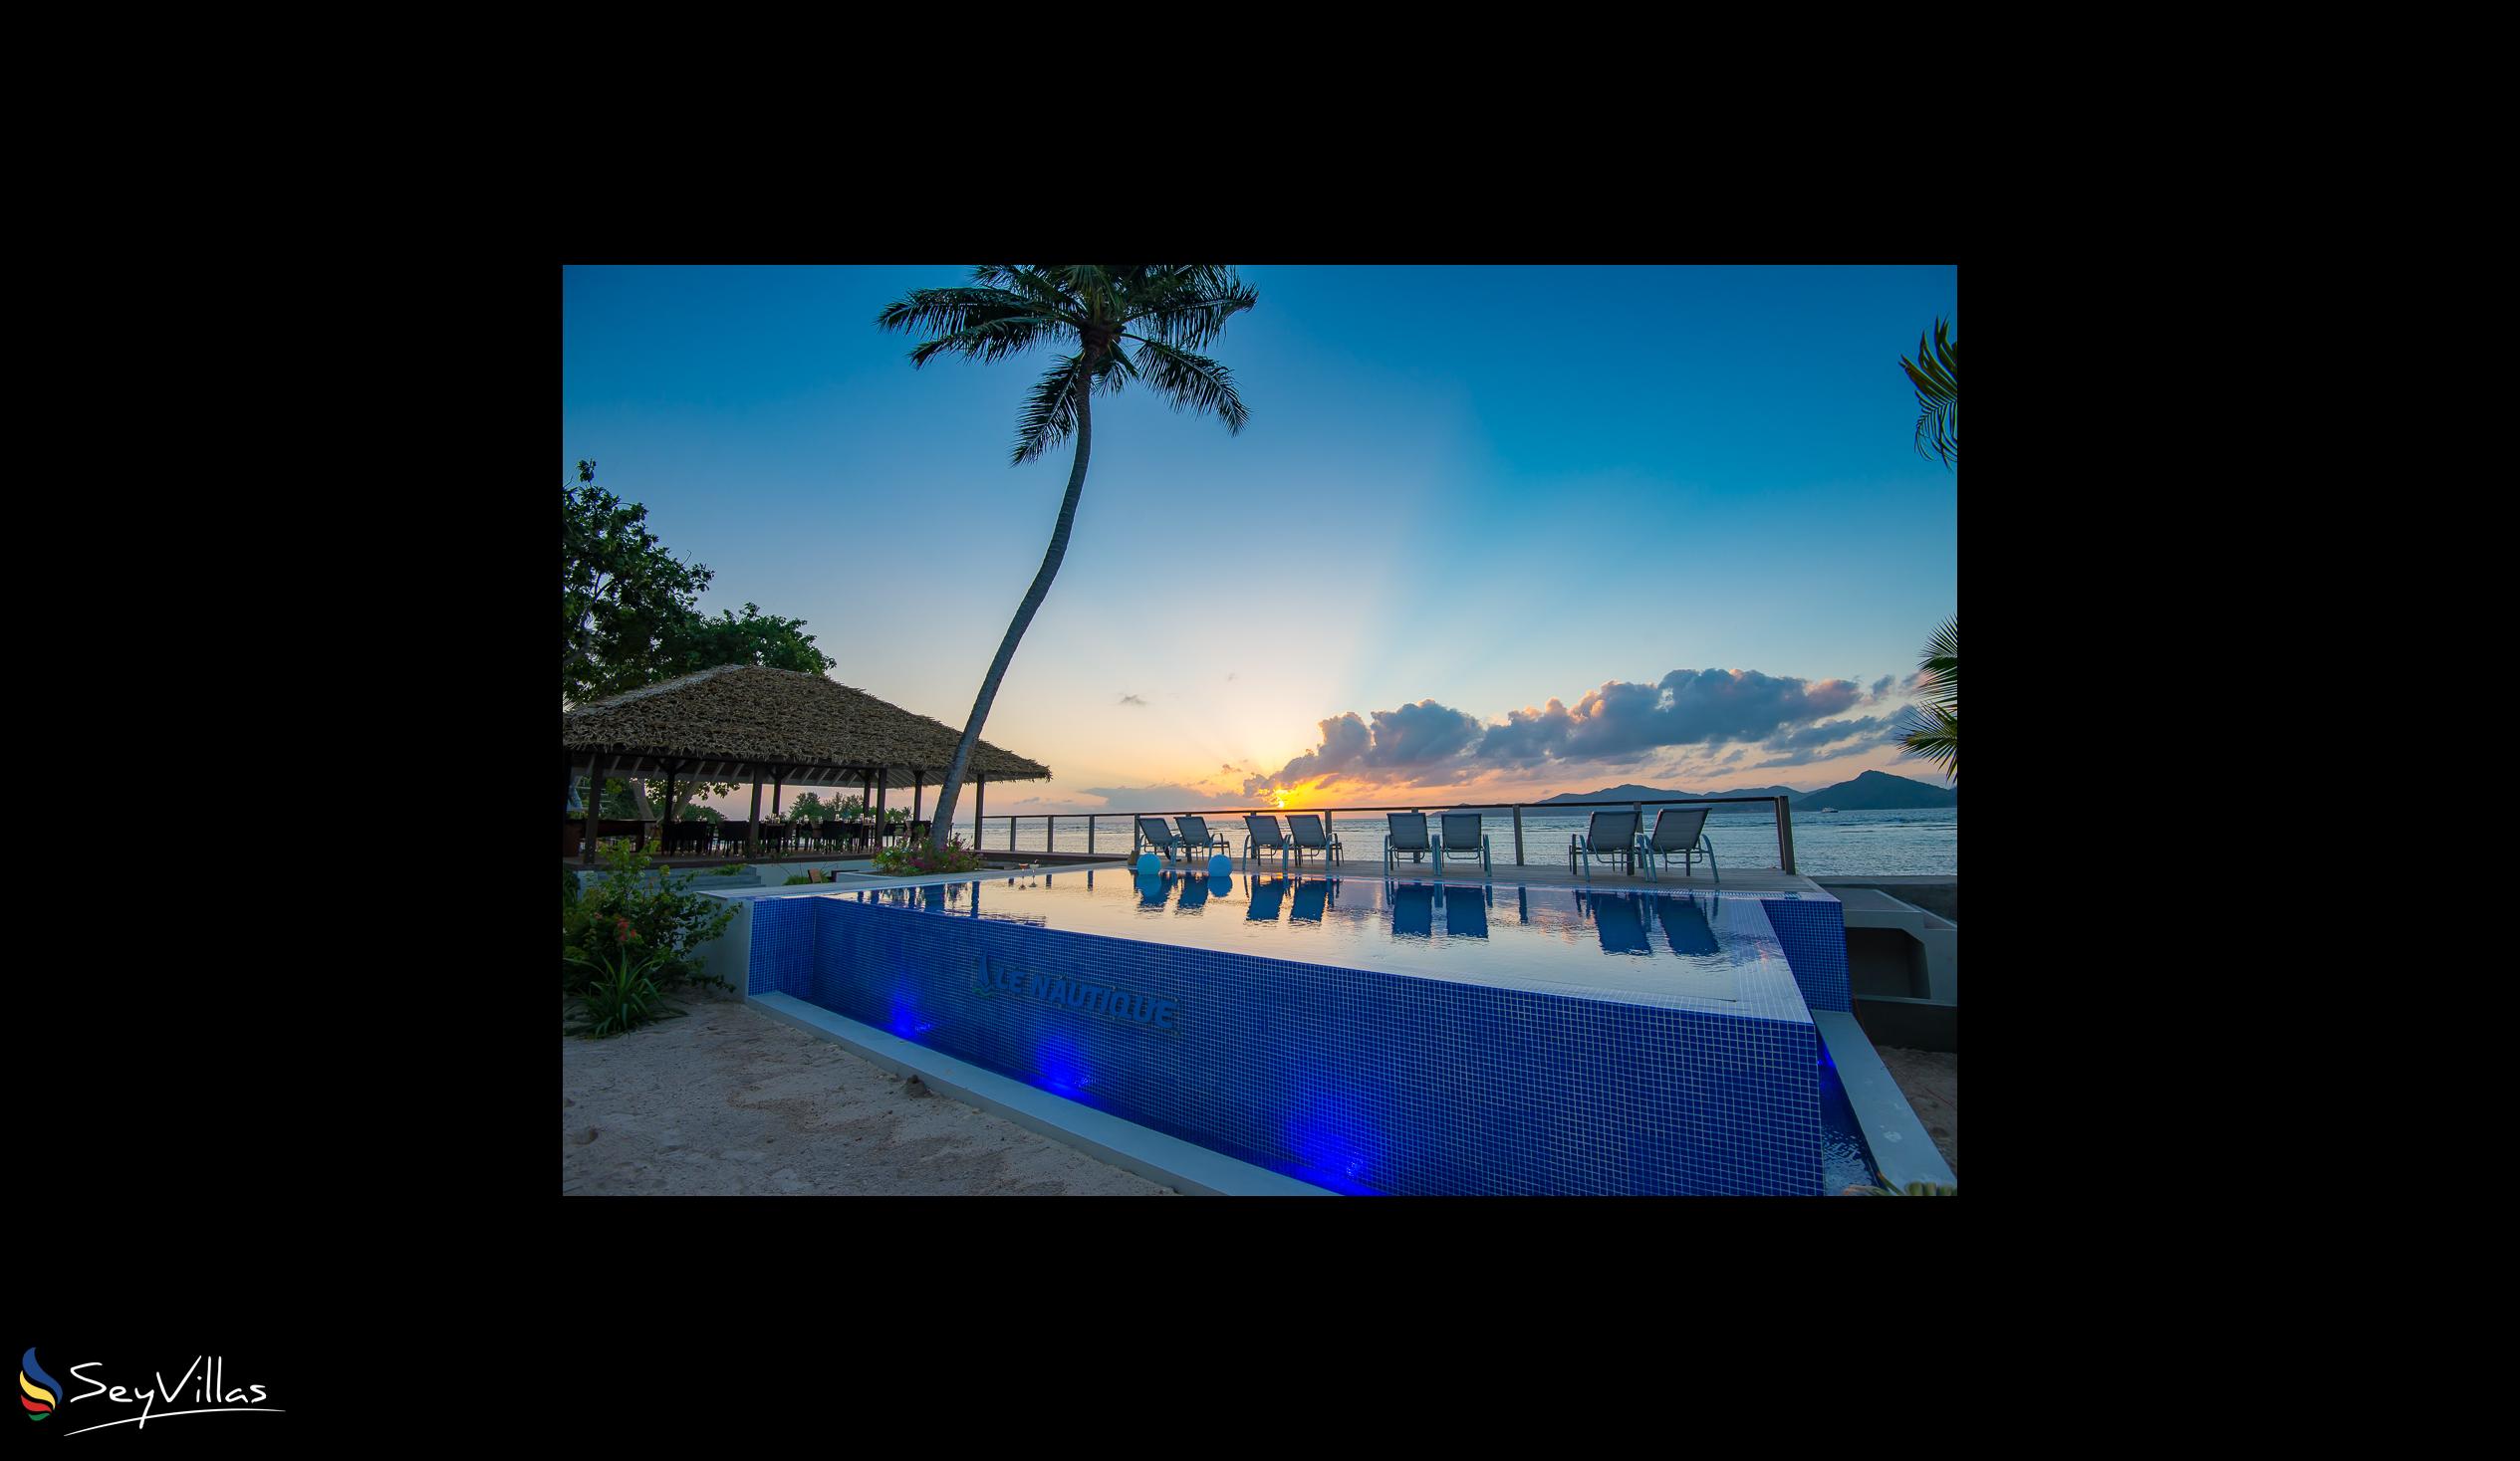 Foto 32: Le Nautique Luxury Waterfront Hotel - Aussenbereich - La Digue (Seychellen)